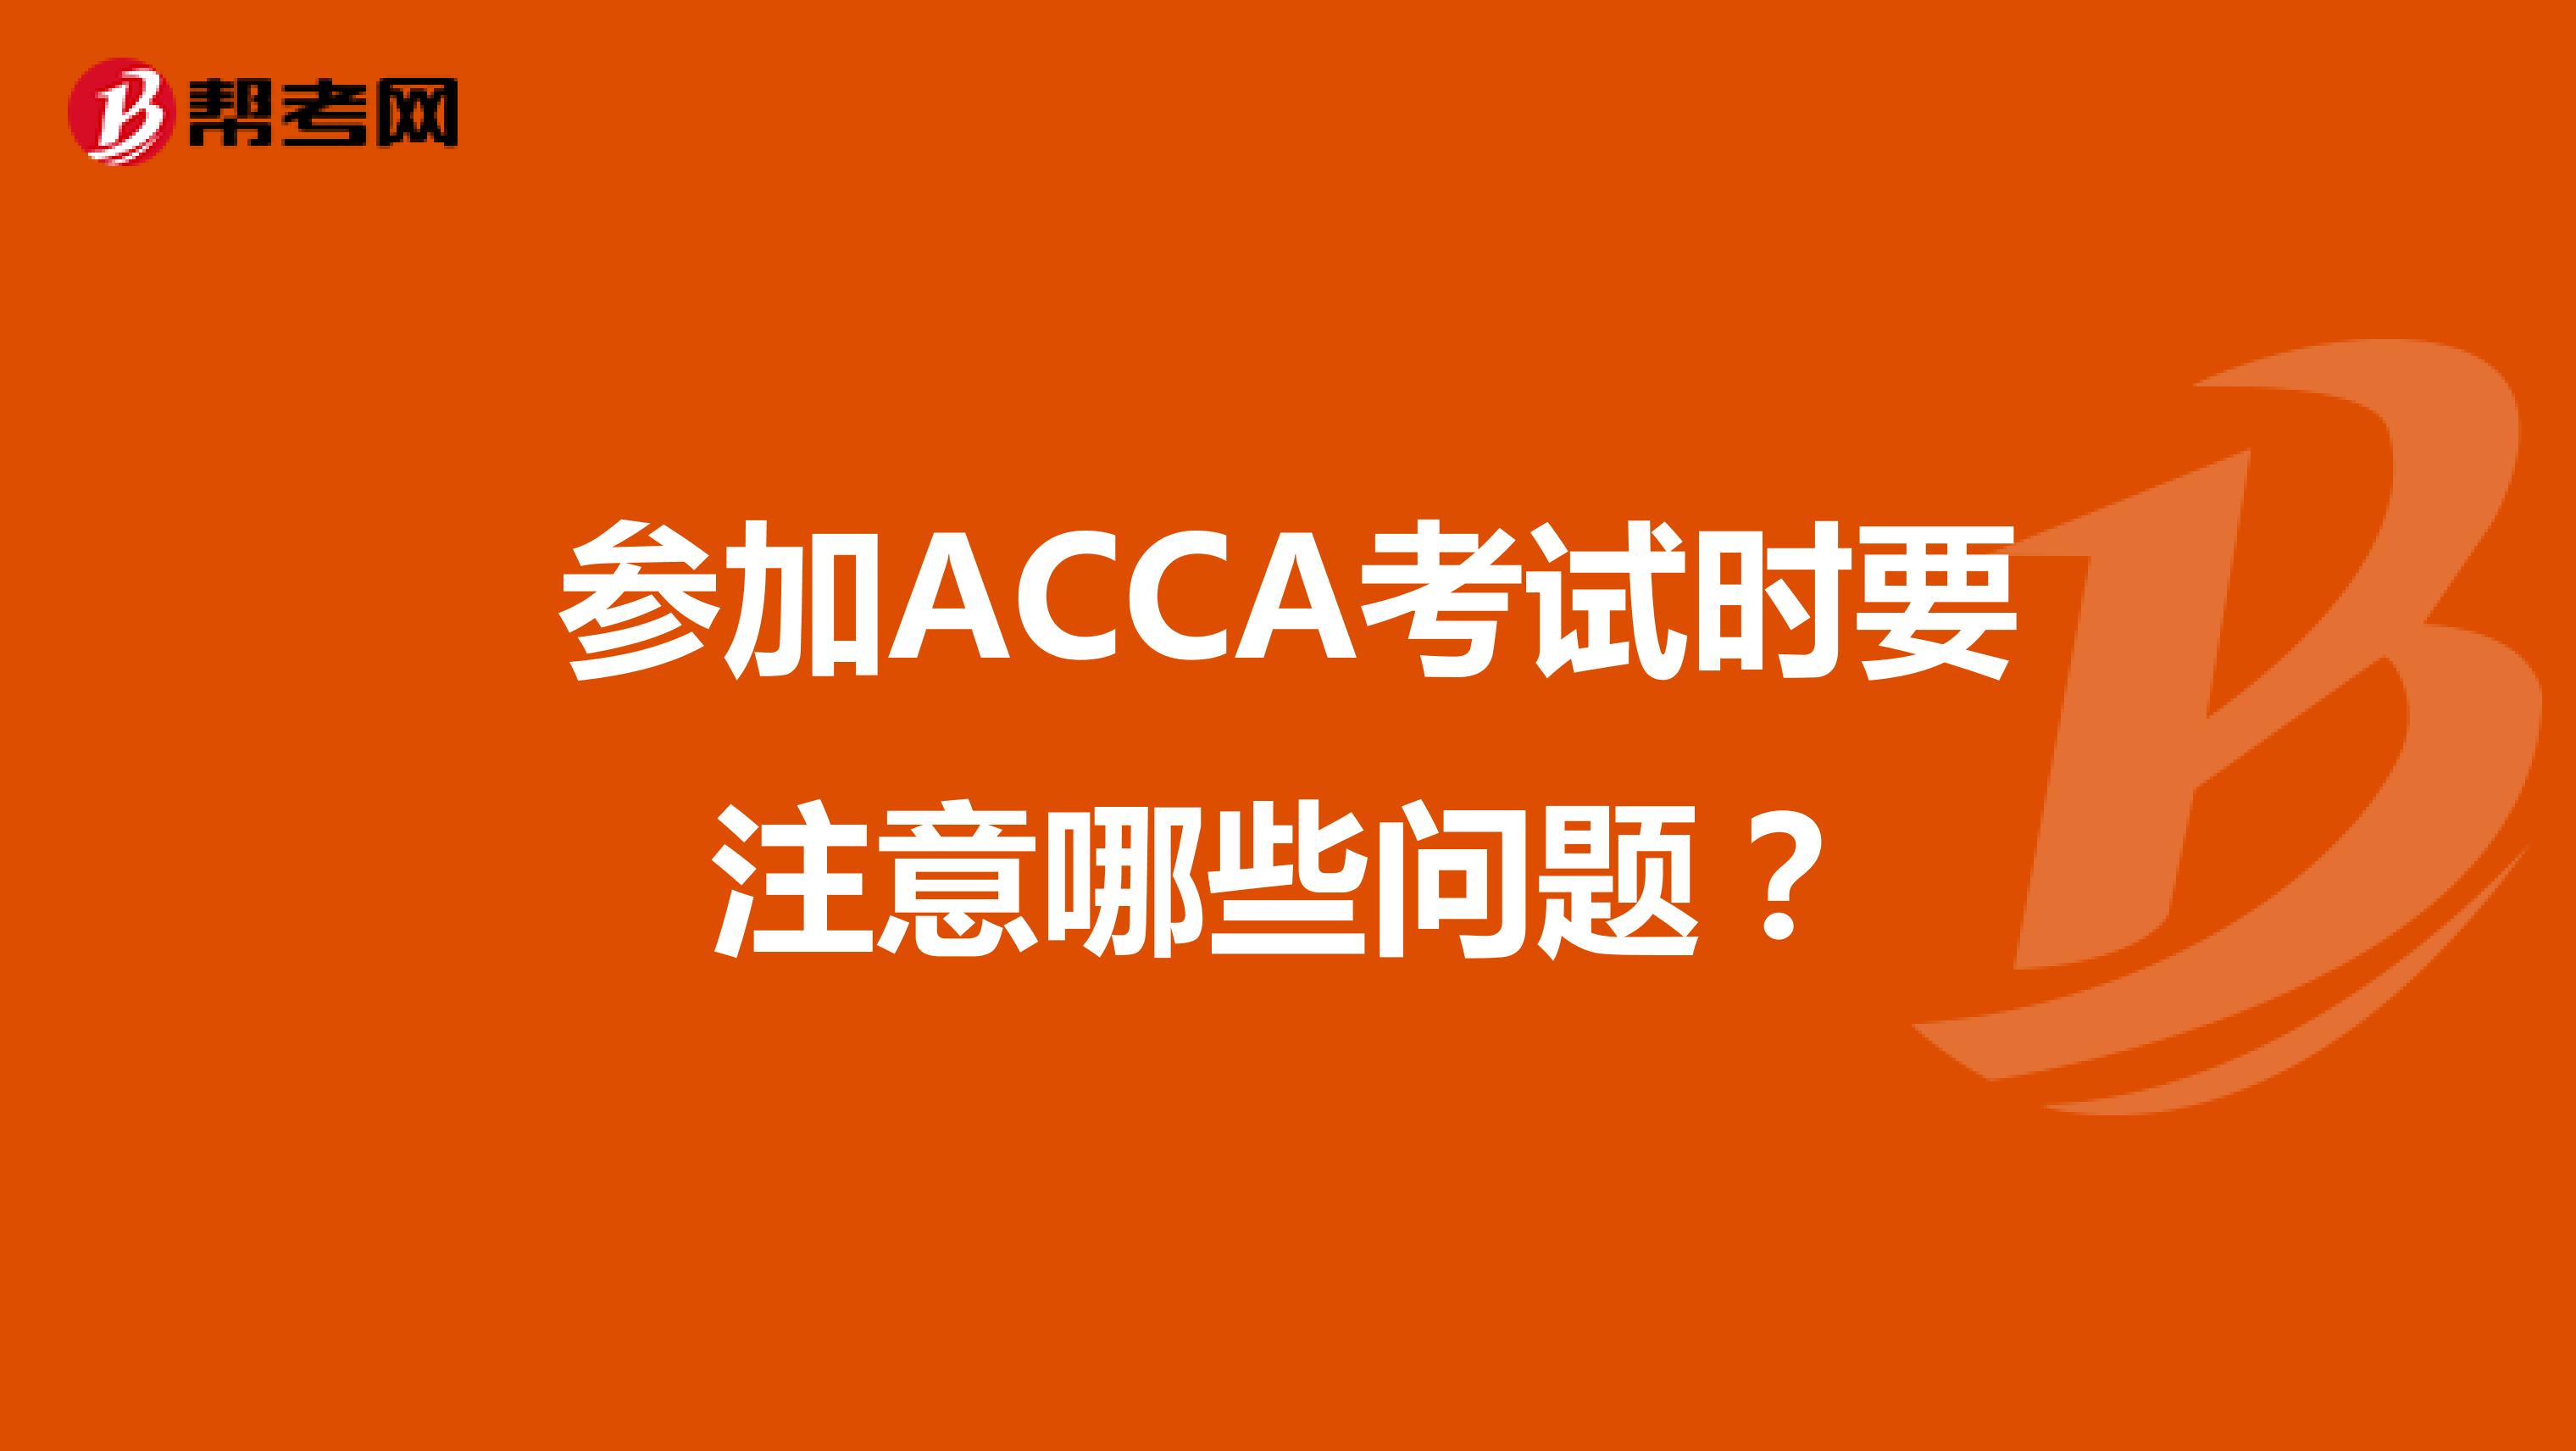 参加ACCA考试时要注意哪些问题？